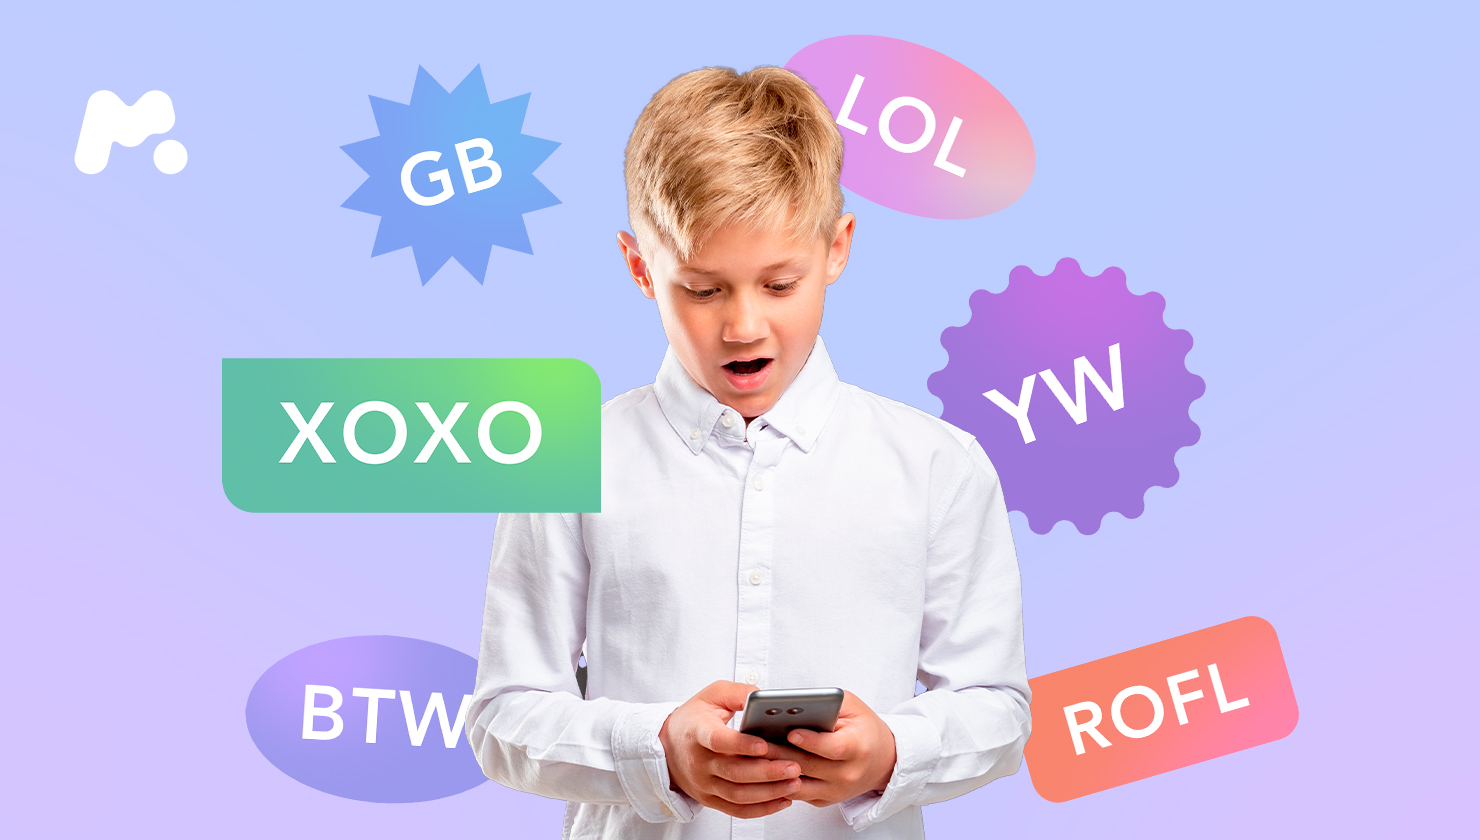 texting abbreviations parents should know